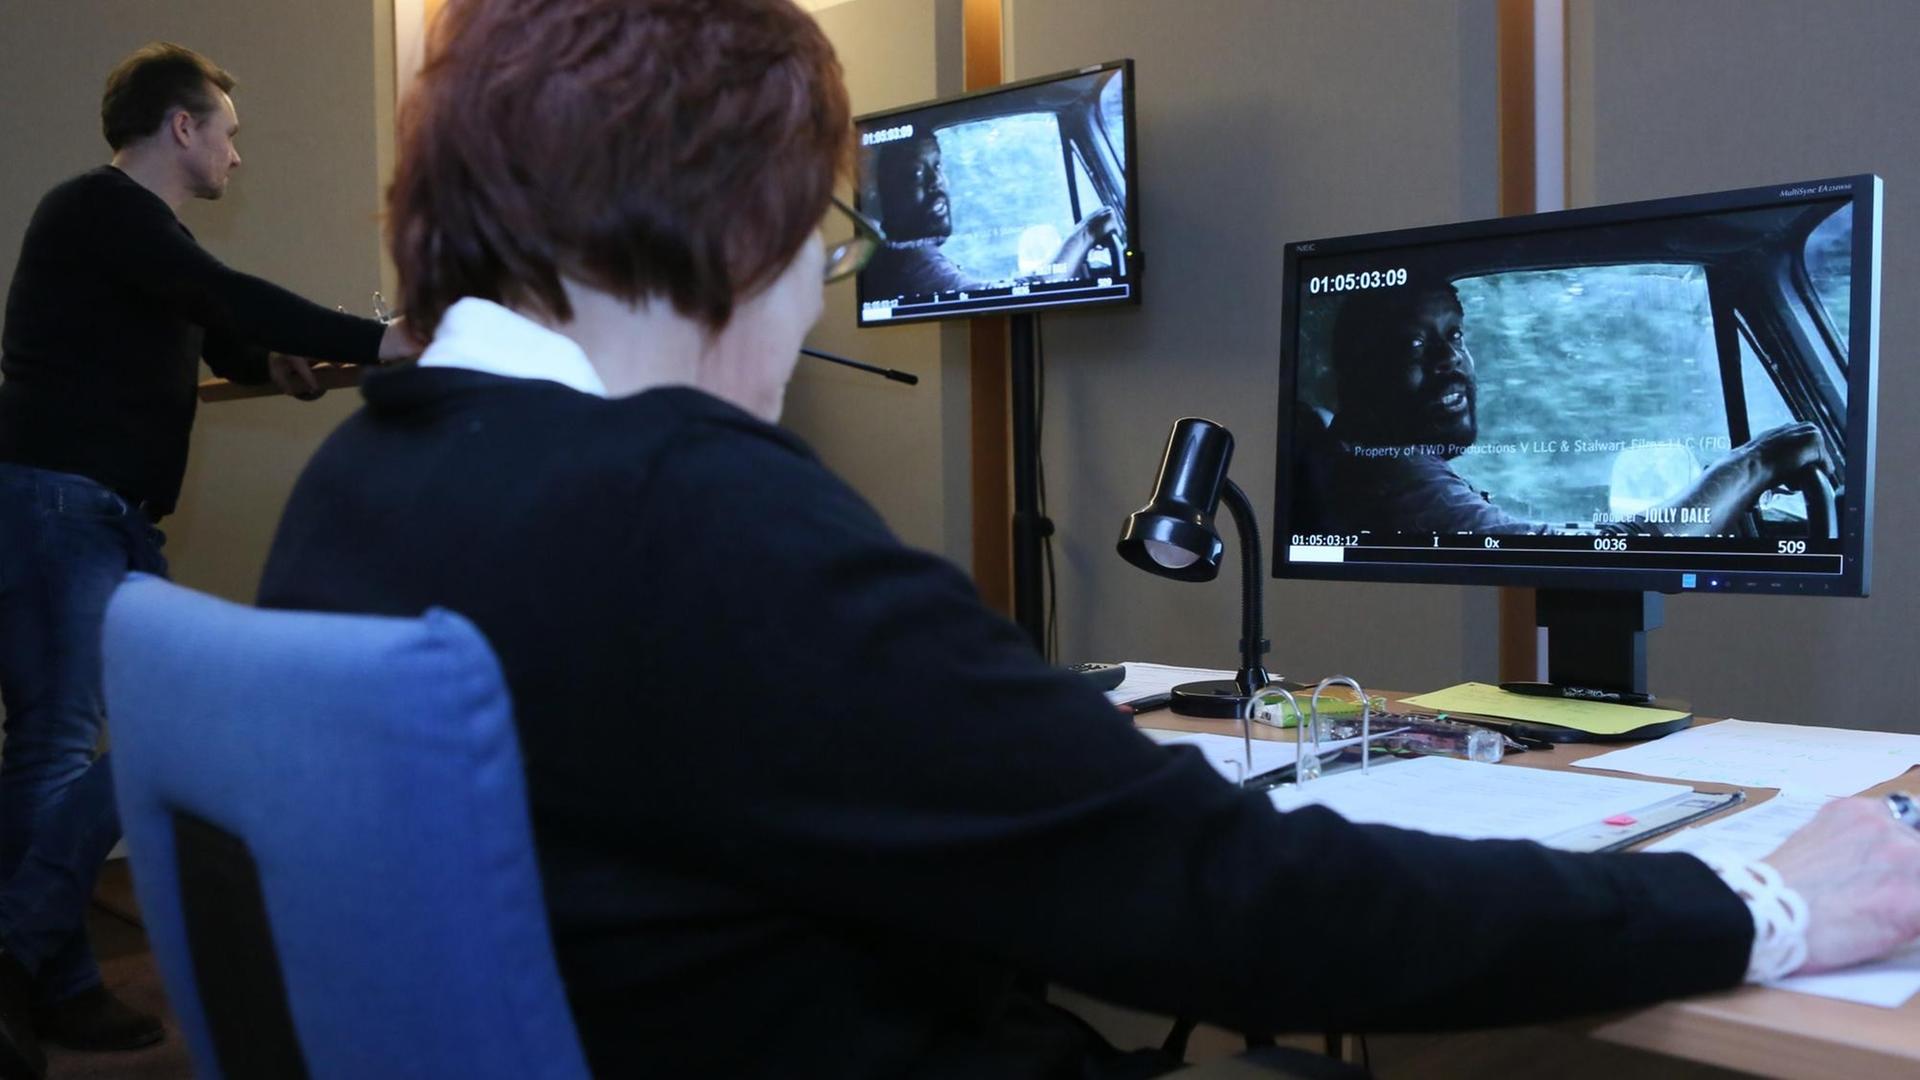 Film-Szenen aus der TV-Serie "The Walking Dead" sind am 21.01.2015 in den Räumen des Berliner Synchonisationsstudios Eurosync auf zwei Monitoren zu sehen.